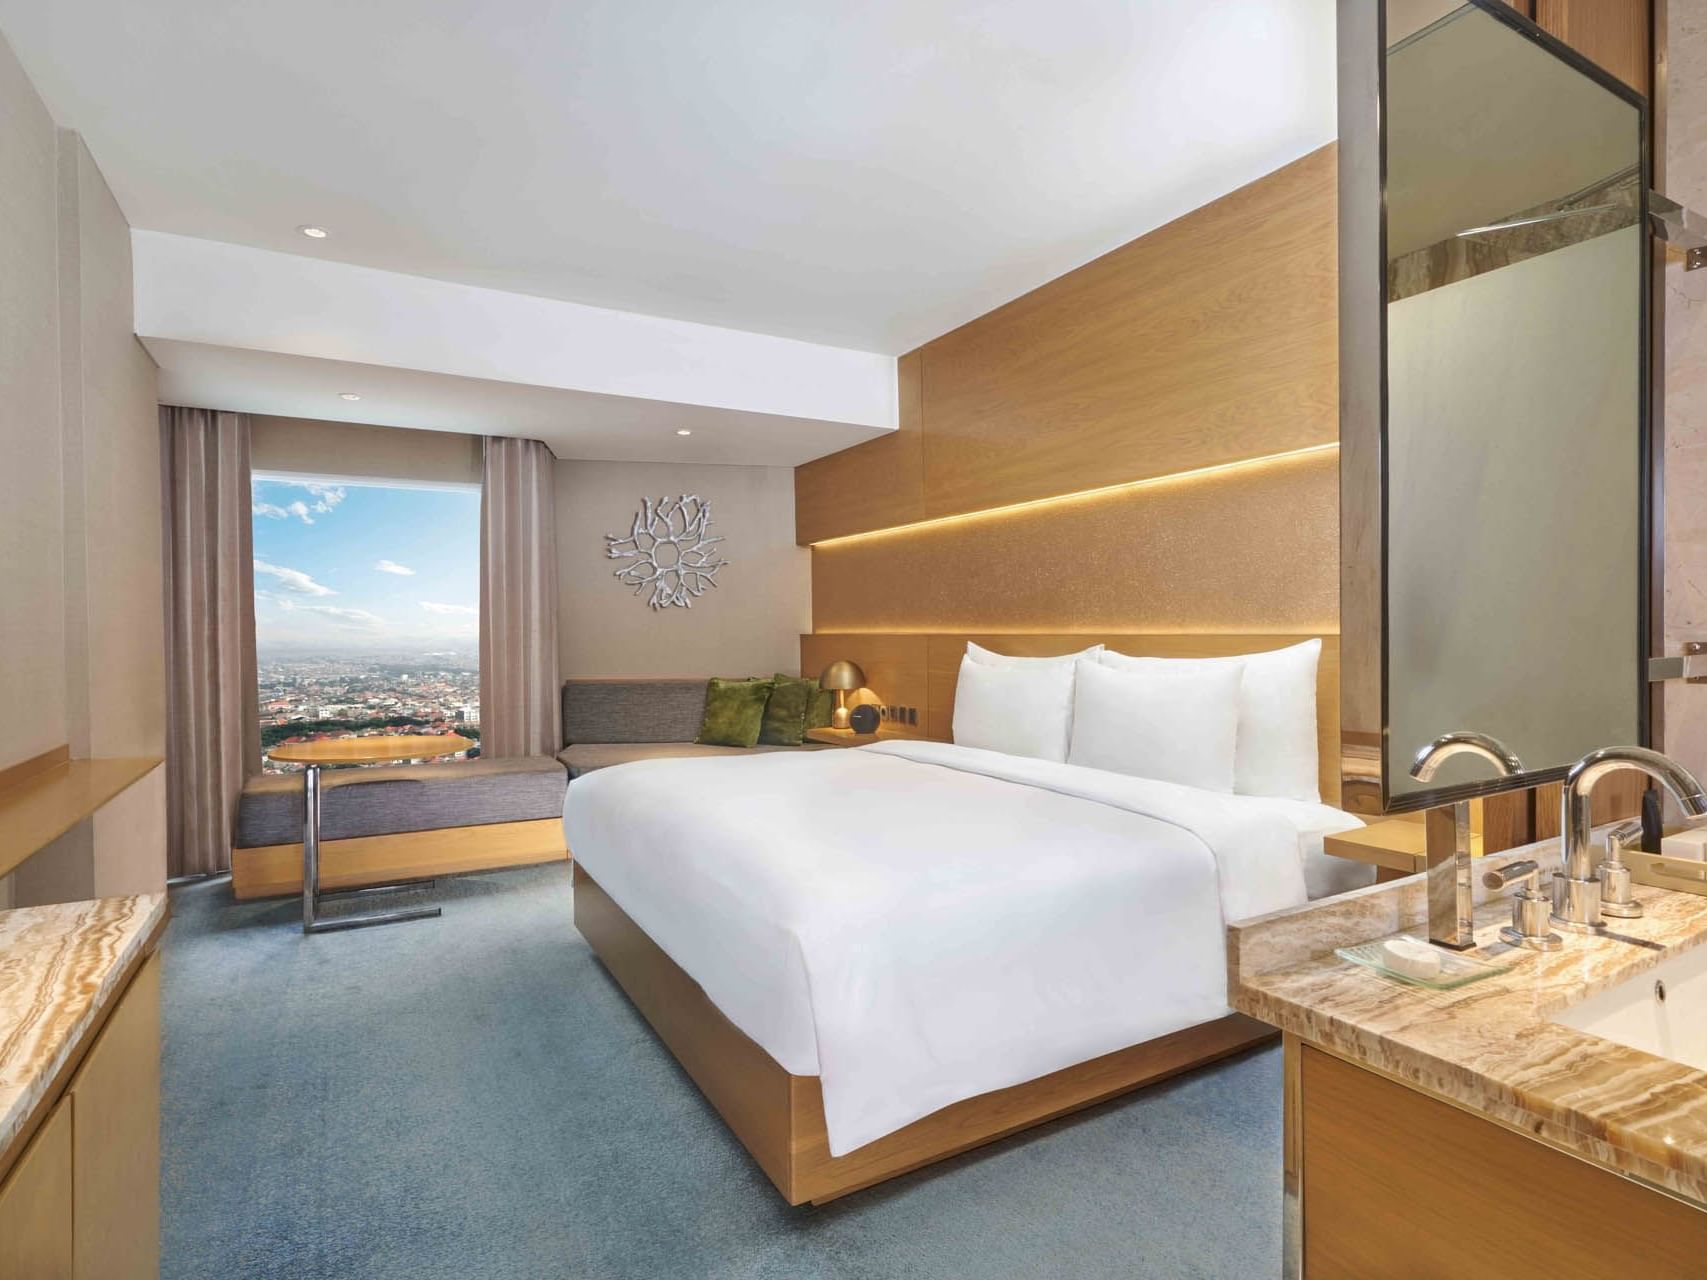 Queen bed & living area of select room in Vasa Hotel Surabaya